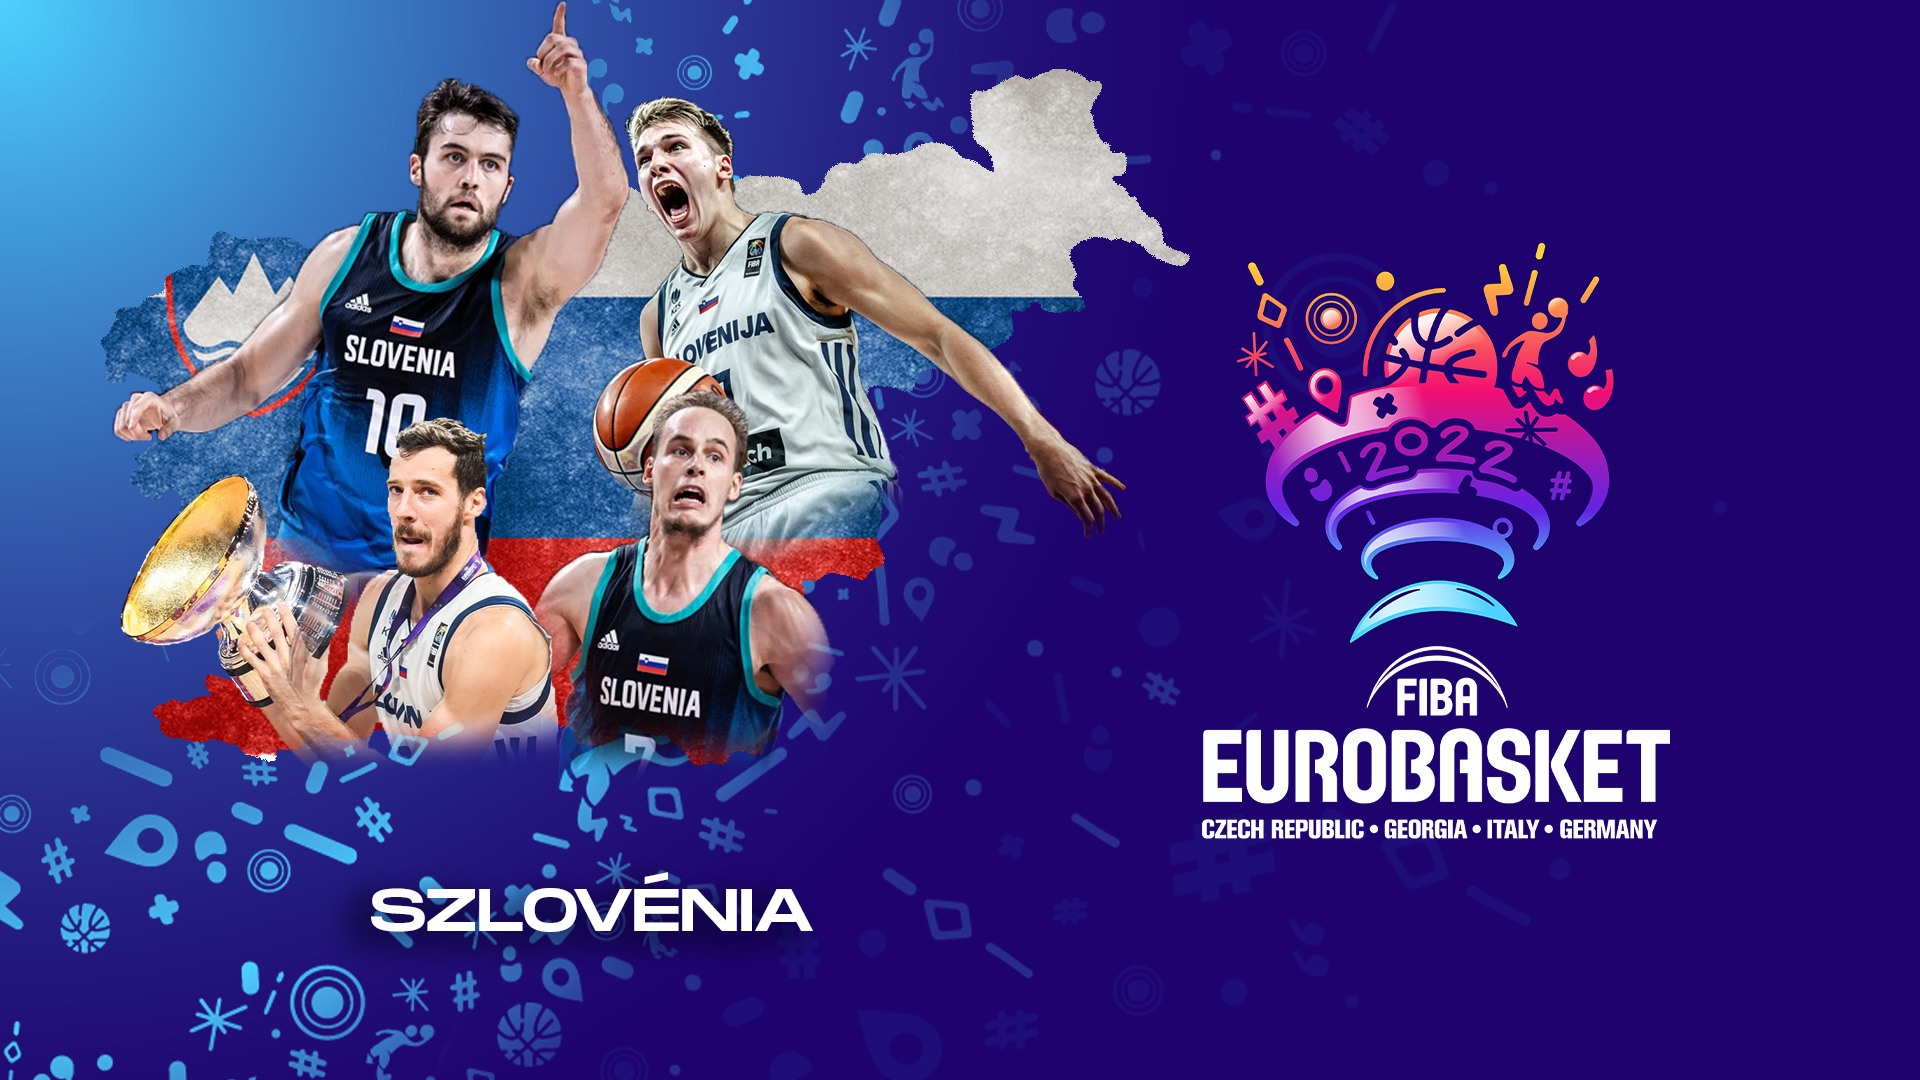 2022-es férfi Európa-bajnokság: A címvédő Szlovénia